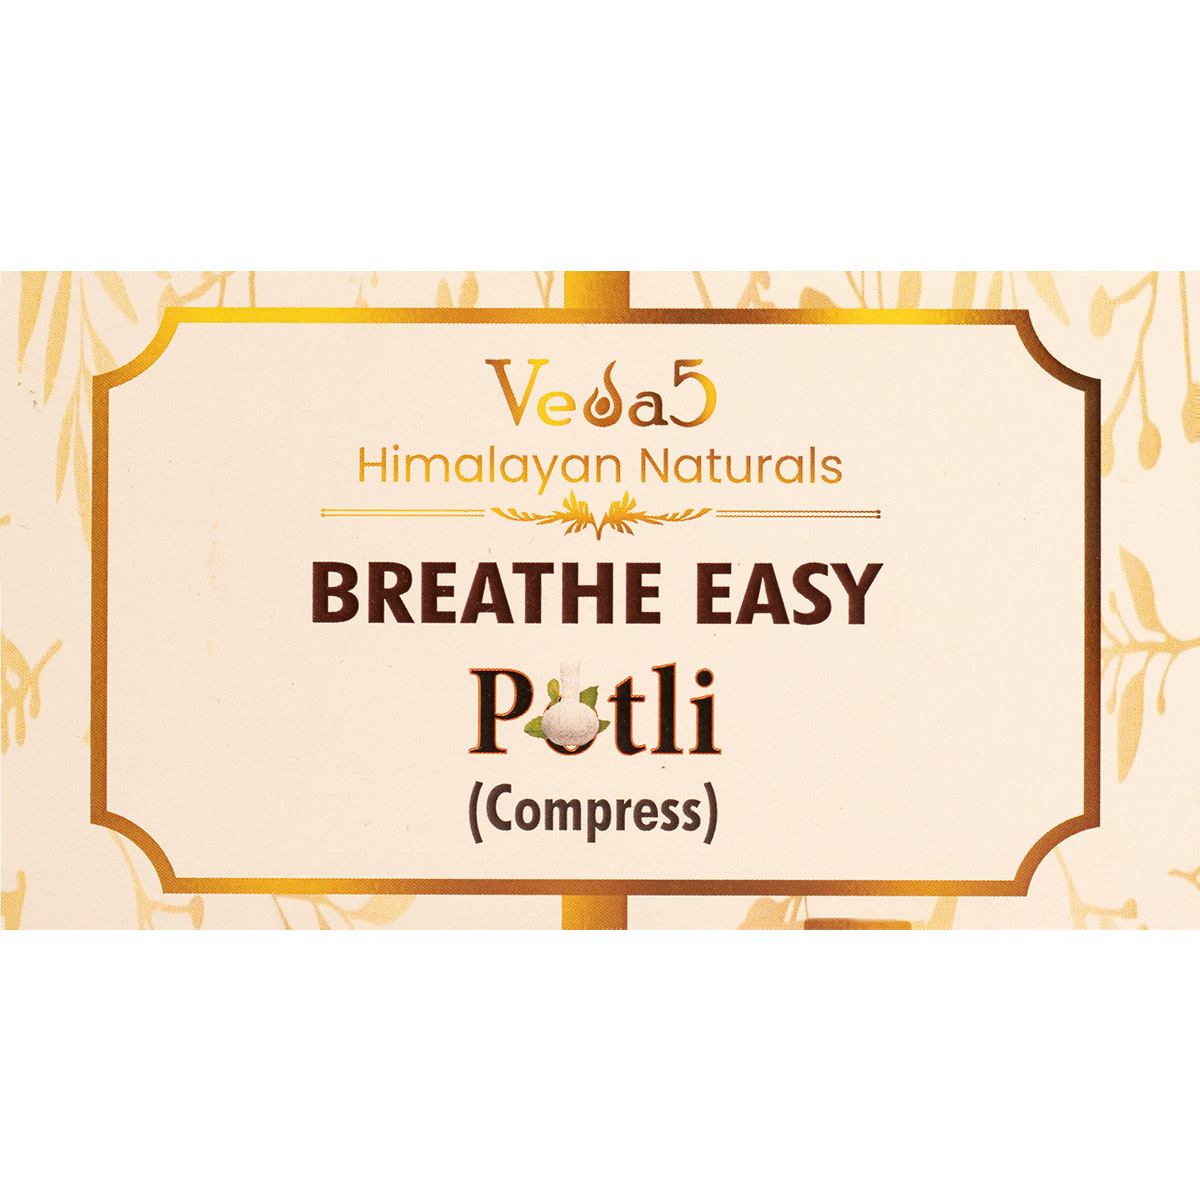 Breathe Easy Potli by Veda5 Himalayan Naturals 2